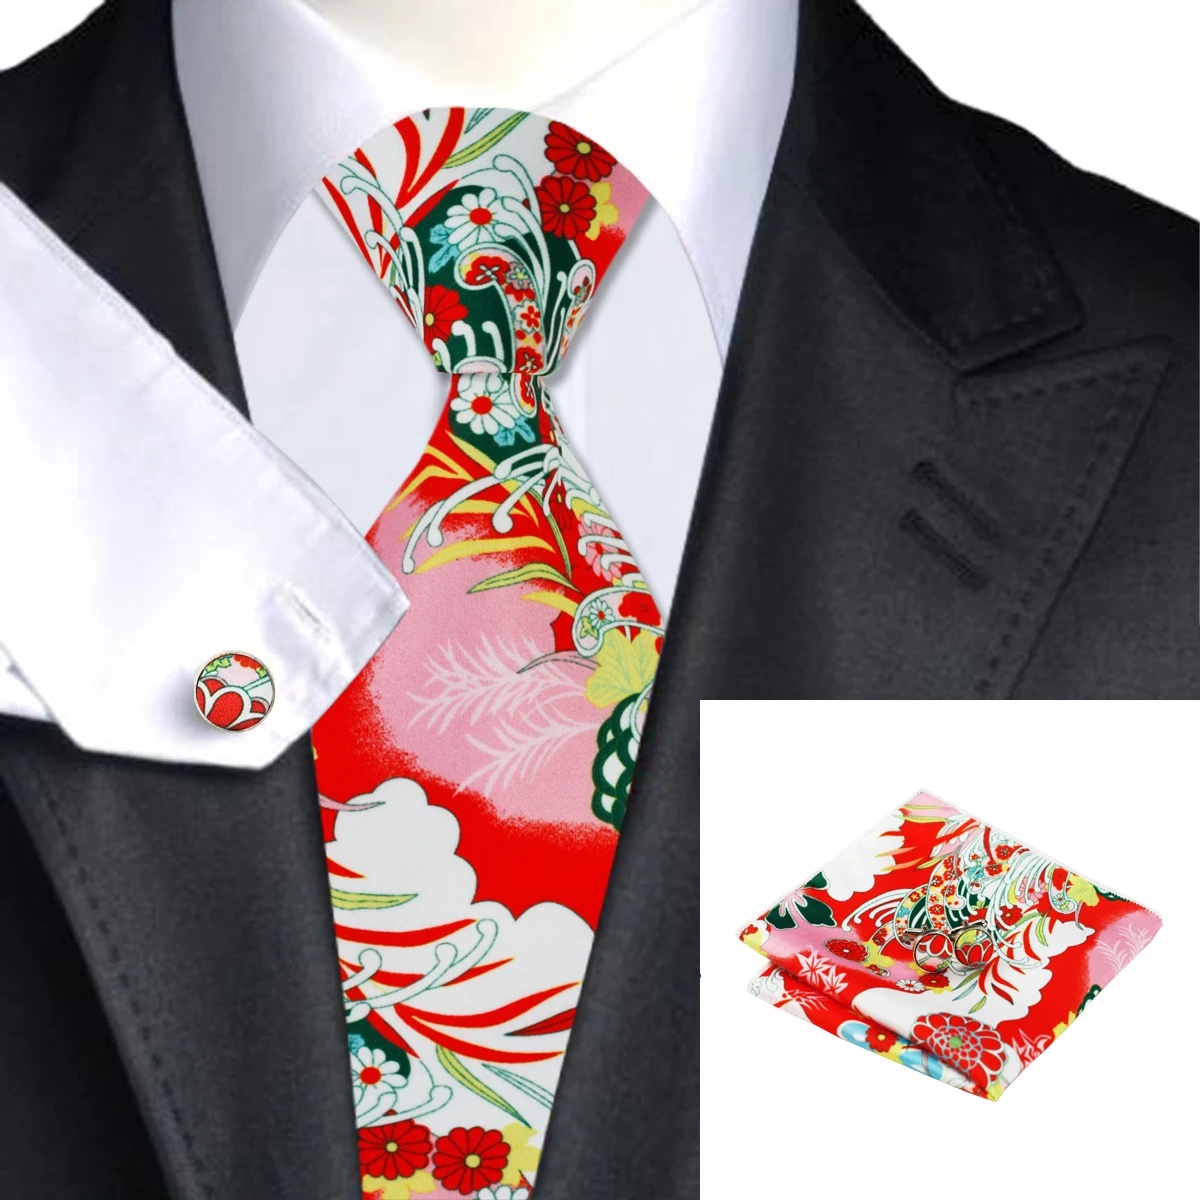 Hi-Tie Handky запонки набор 150 см большой мужской галстук красный шелк галстуки для мужчин роскошный цветочный модный дизайнерский Свадебный галстук